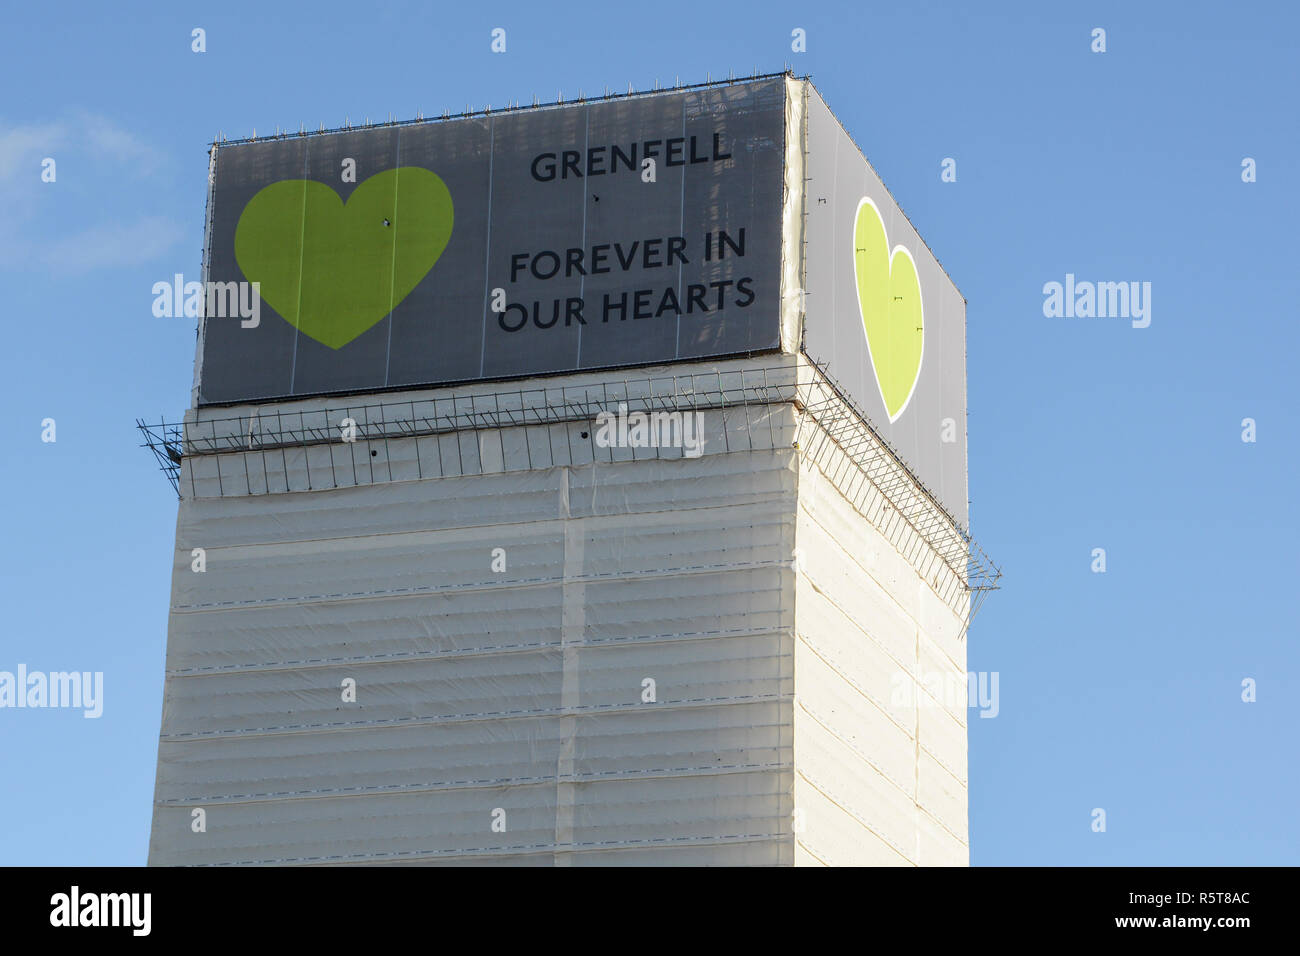 Der Ort der Grenfell Tower Hochhaus Wohnung Feuer Tragödie - für immer in unseren Herzen, London, England, Großbritannien Stockfoto